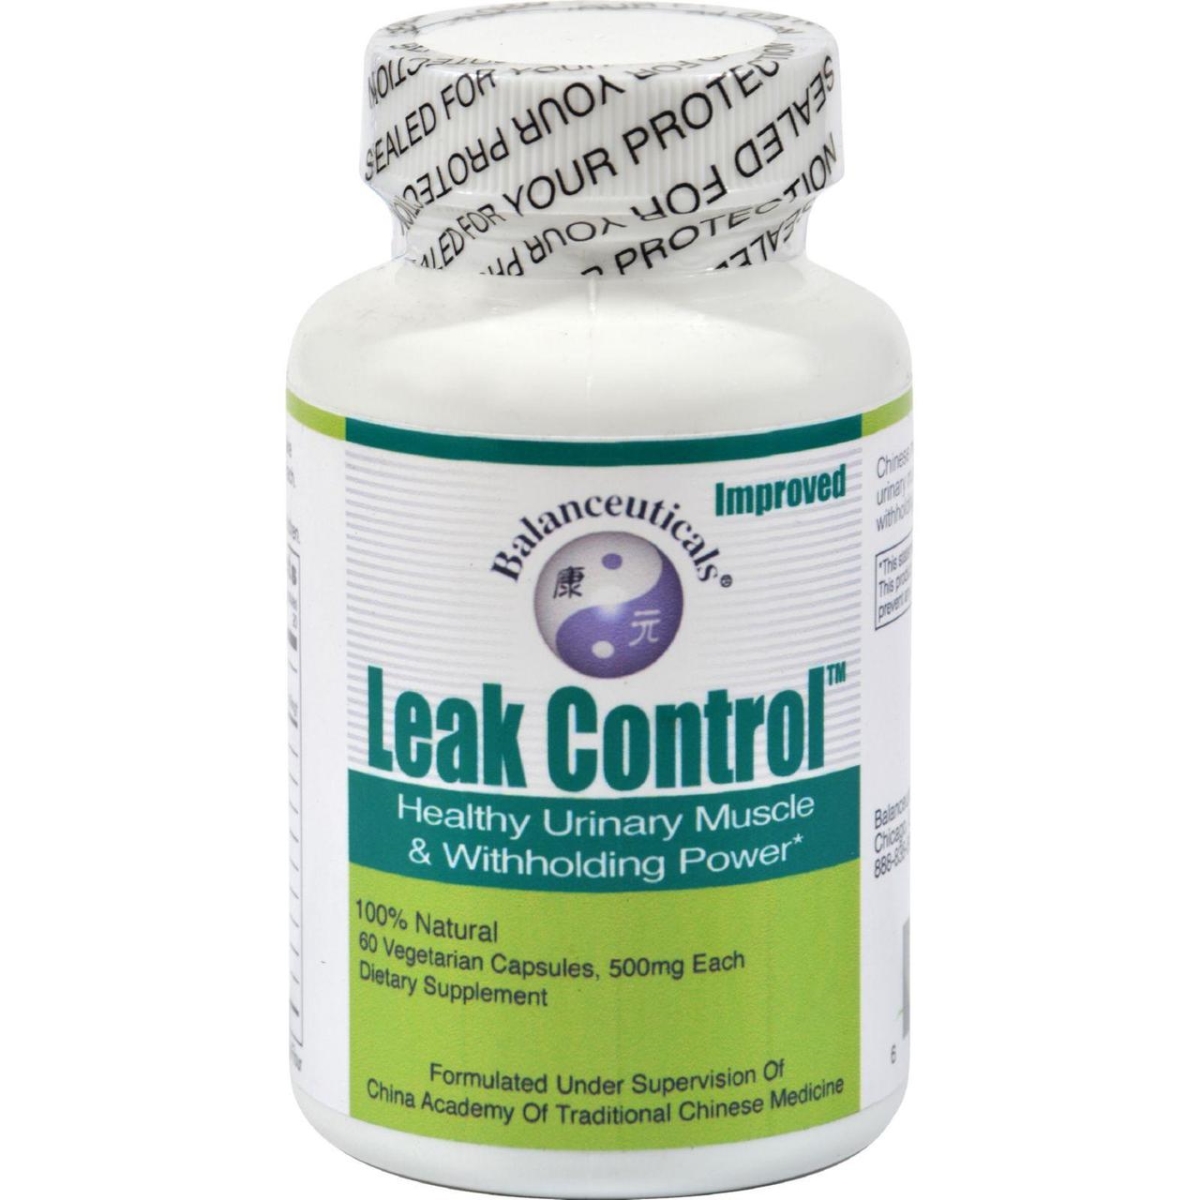 Hg0285908 Leak Control - 60 Capsules